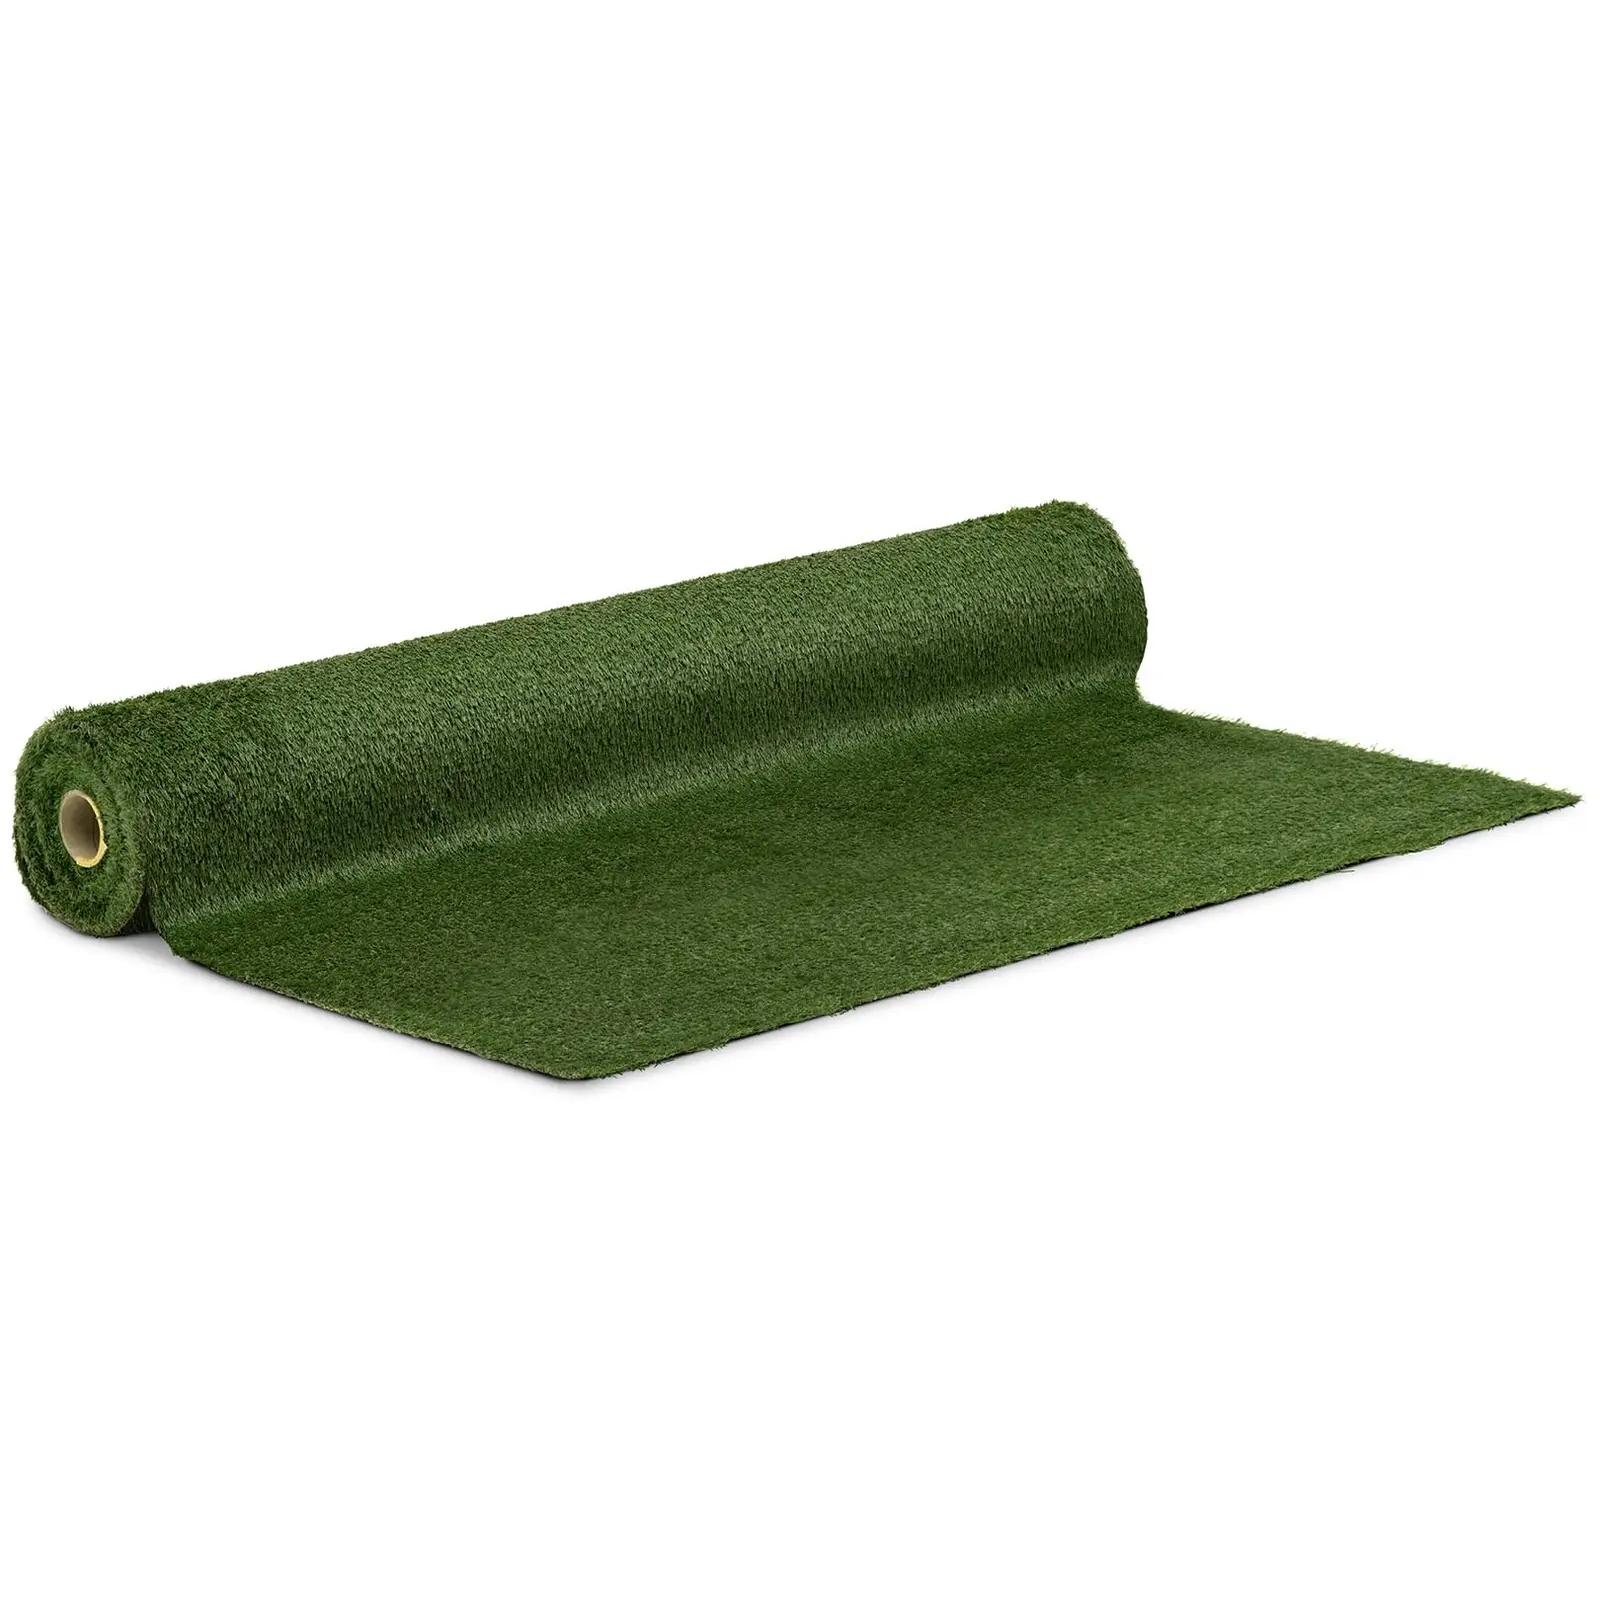 Umělý trávník - 2538 x 200 cm - výška: 30 mm - hustota stehů: 14/10 cm - odolný proti UV záření